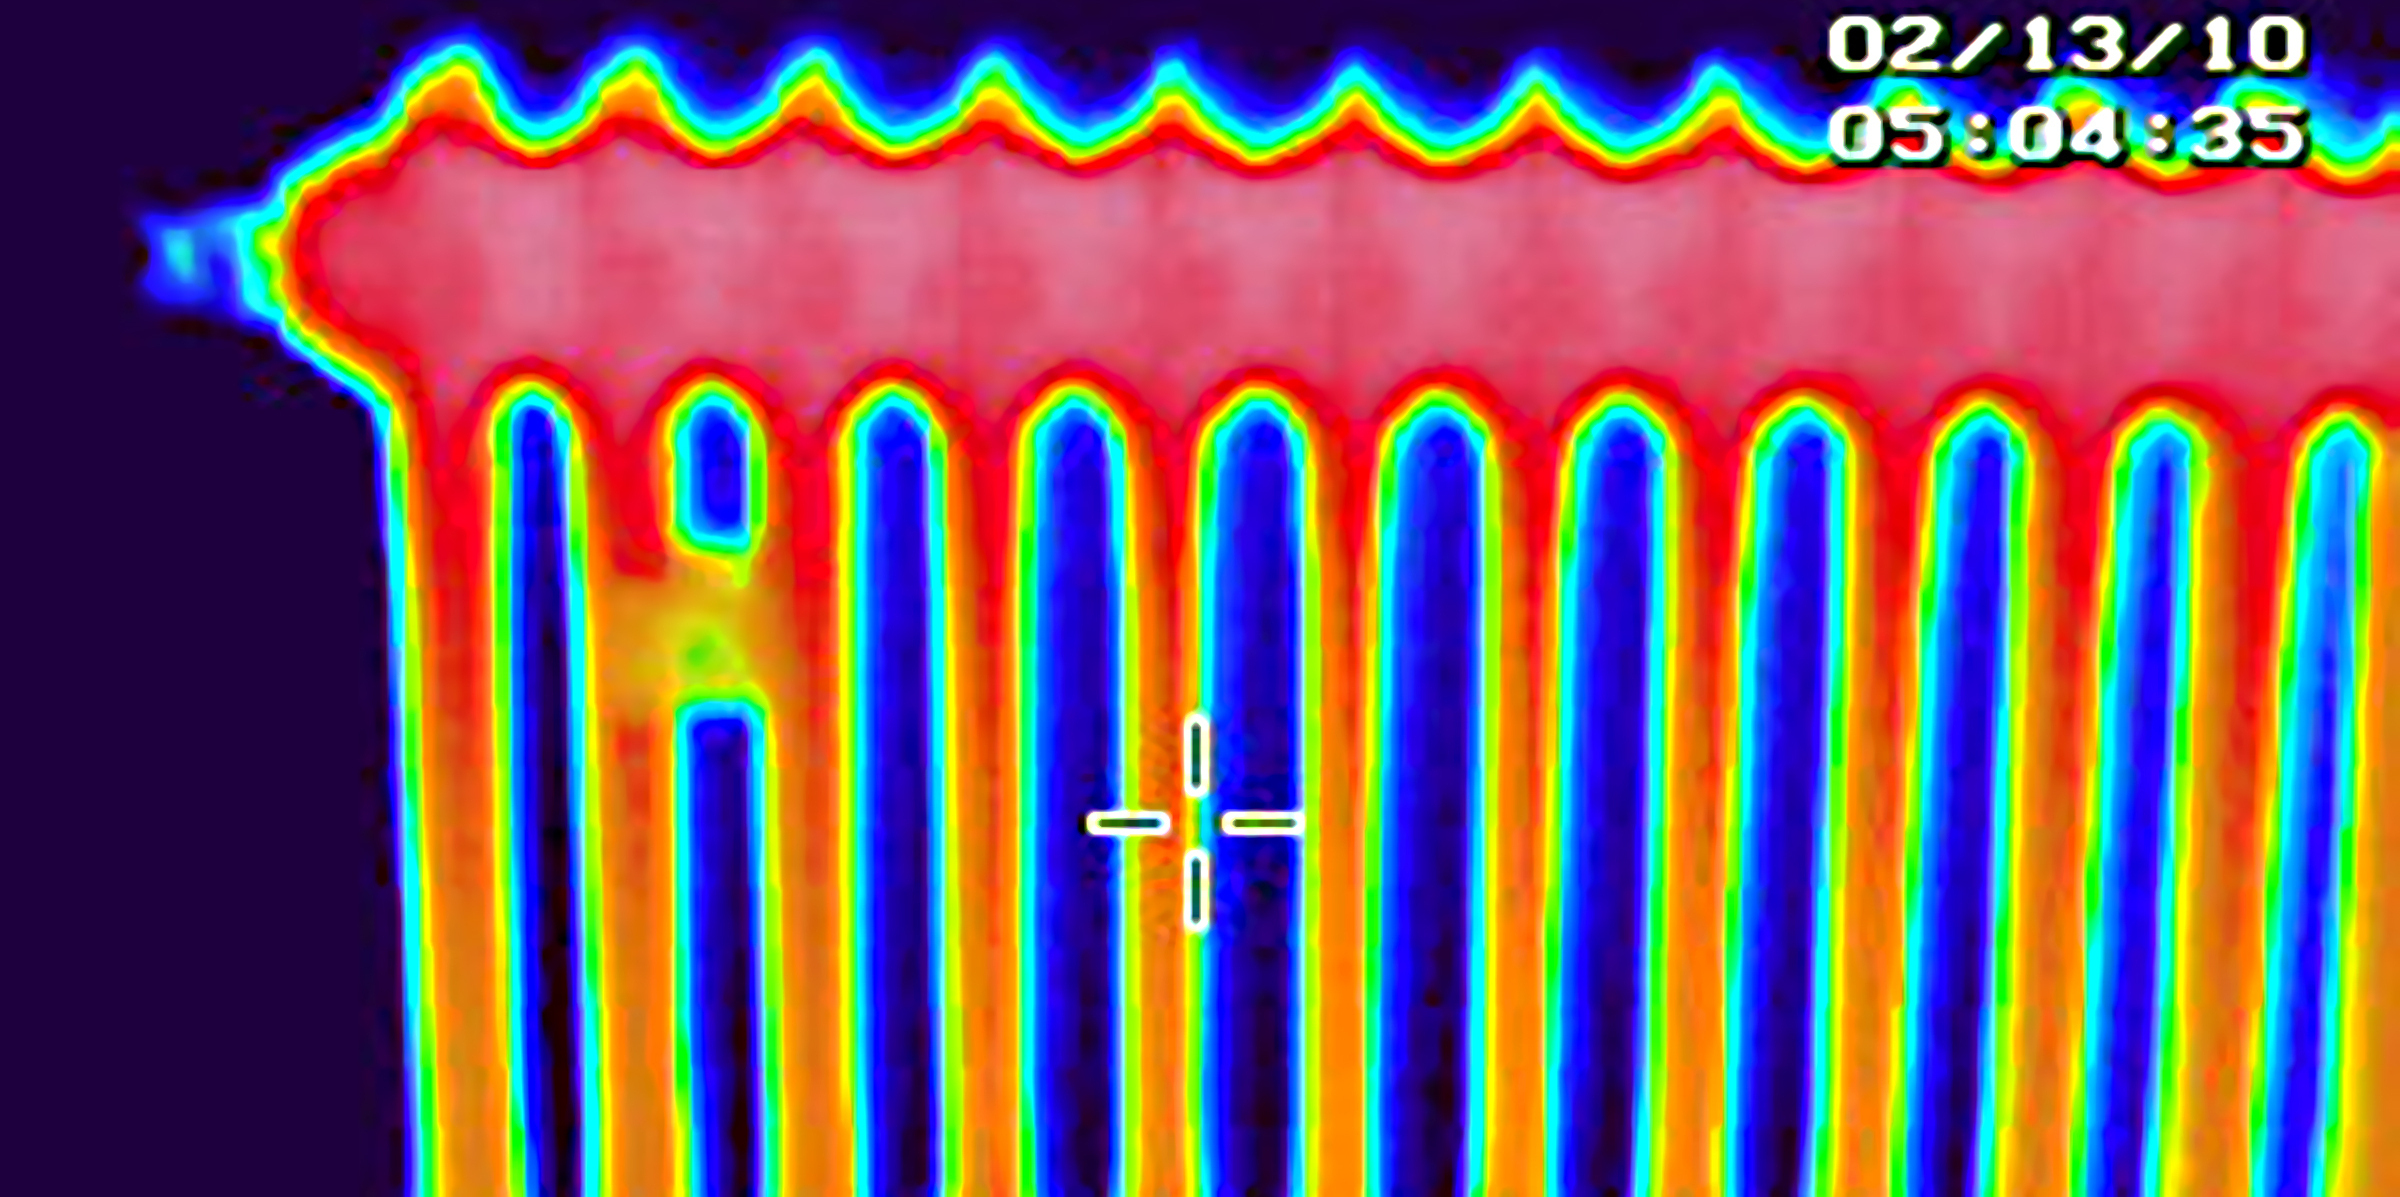 Infrarot-Wärmebild eines Zentraheizungskörpers. Dunkelblauer Hintergrund, die Zentralheizung ist oben rot, nach untengehend wird die Heizung gelb